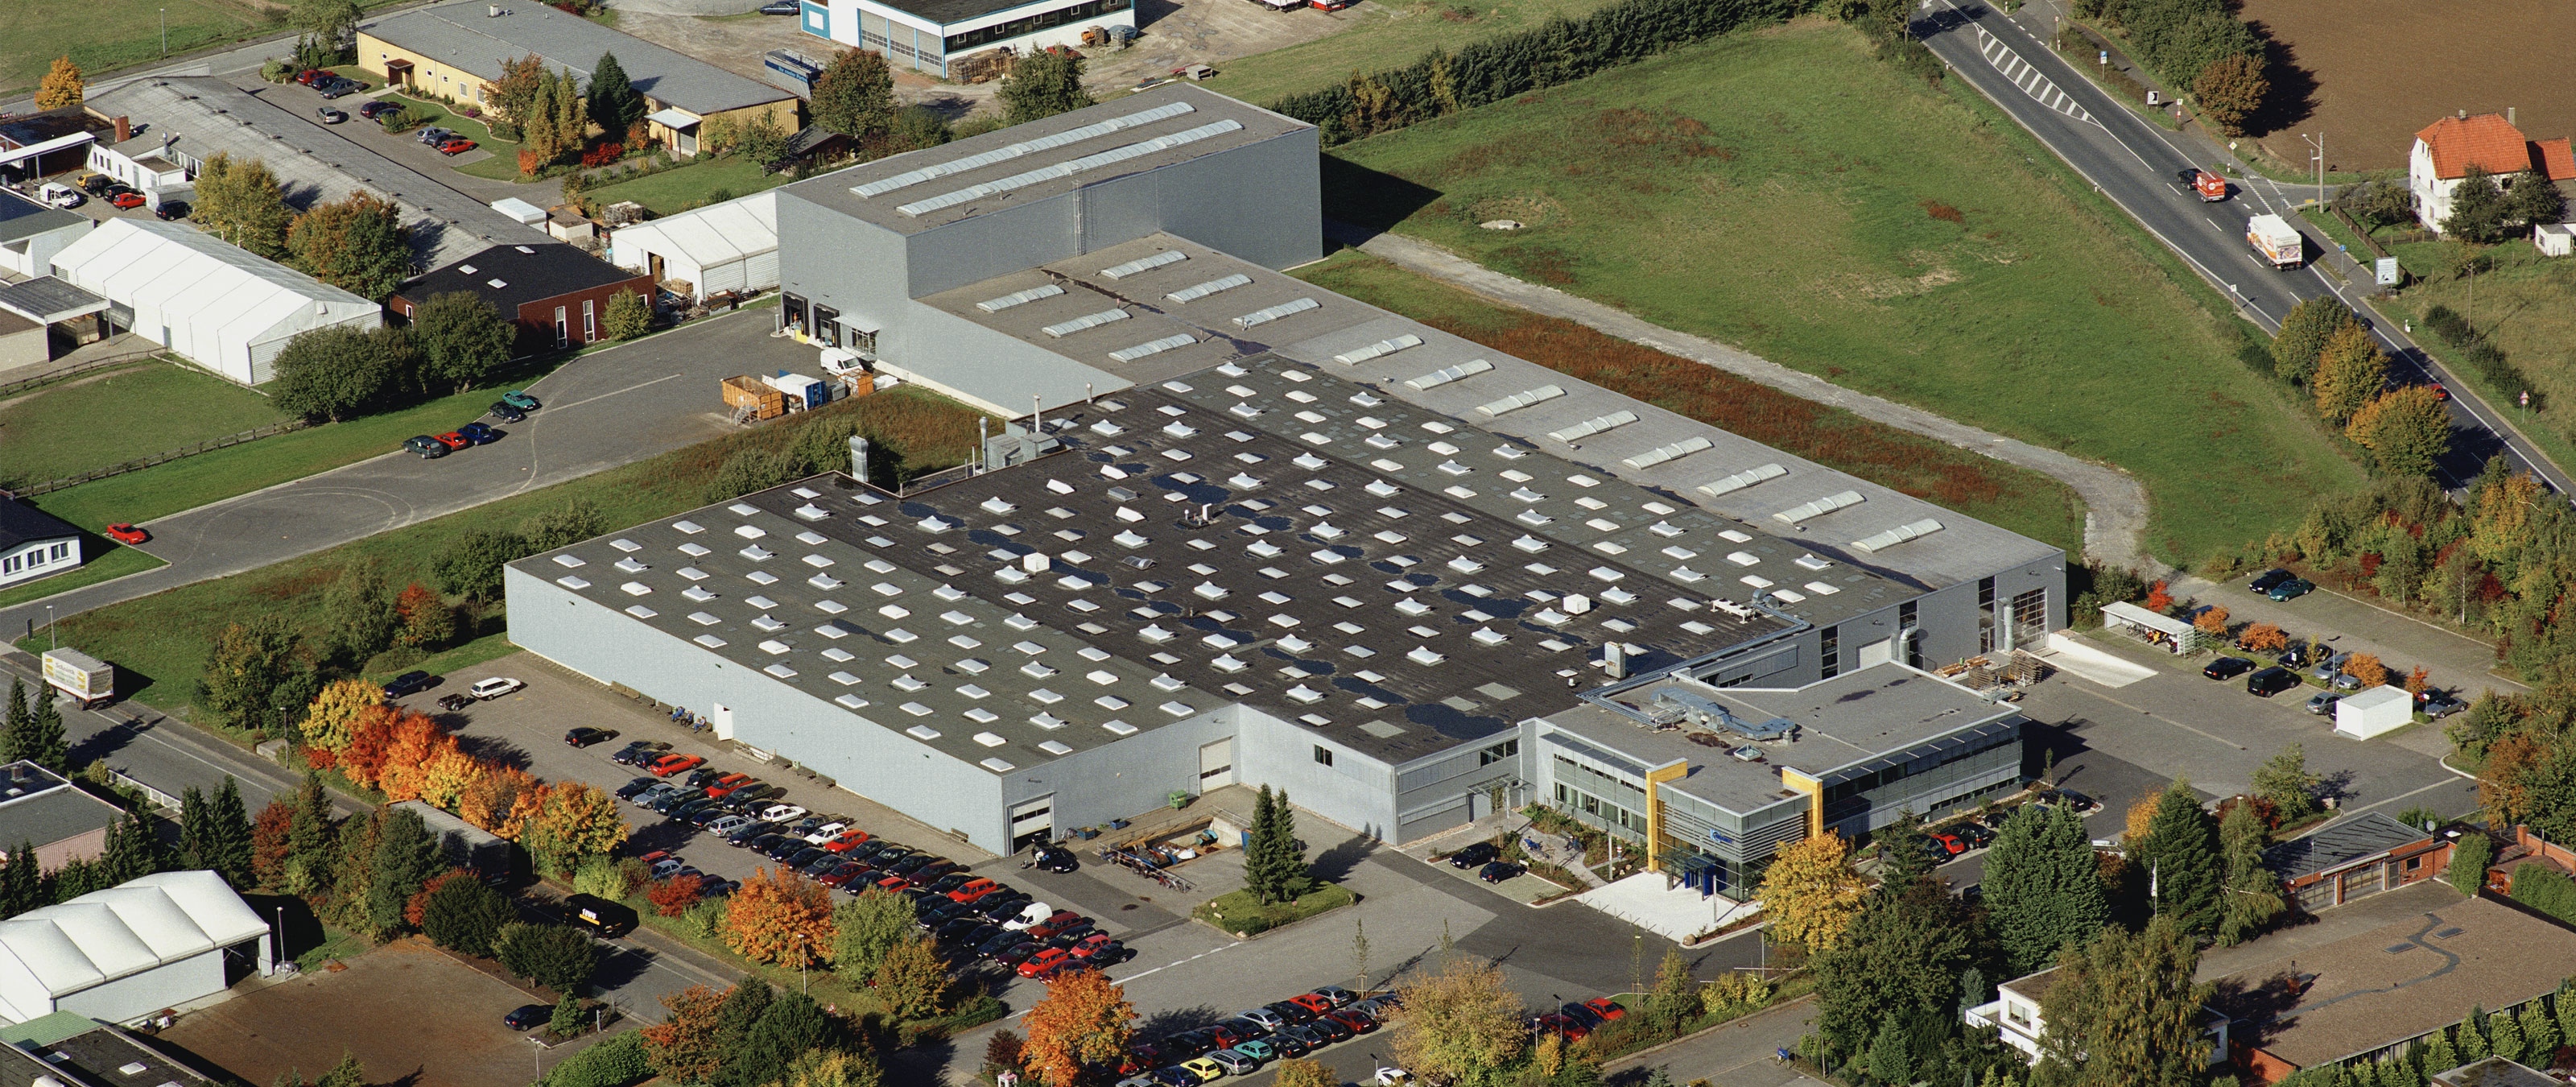 Фото с высоты птичьего полета. Завод Brandt Kantentechnik GmbH в г. Лемго